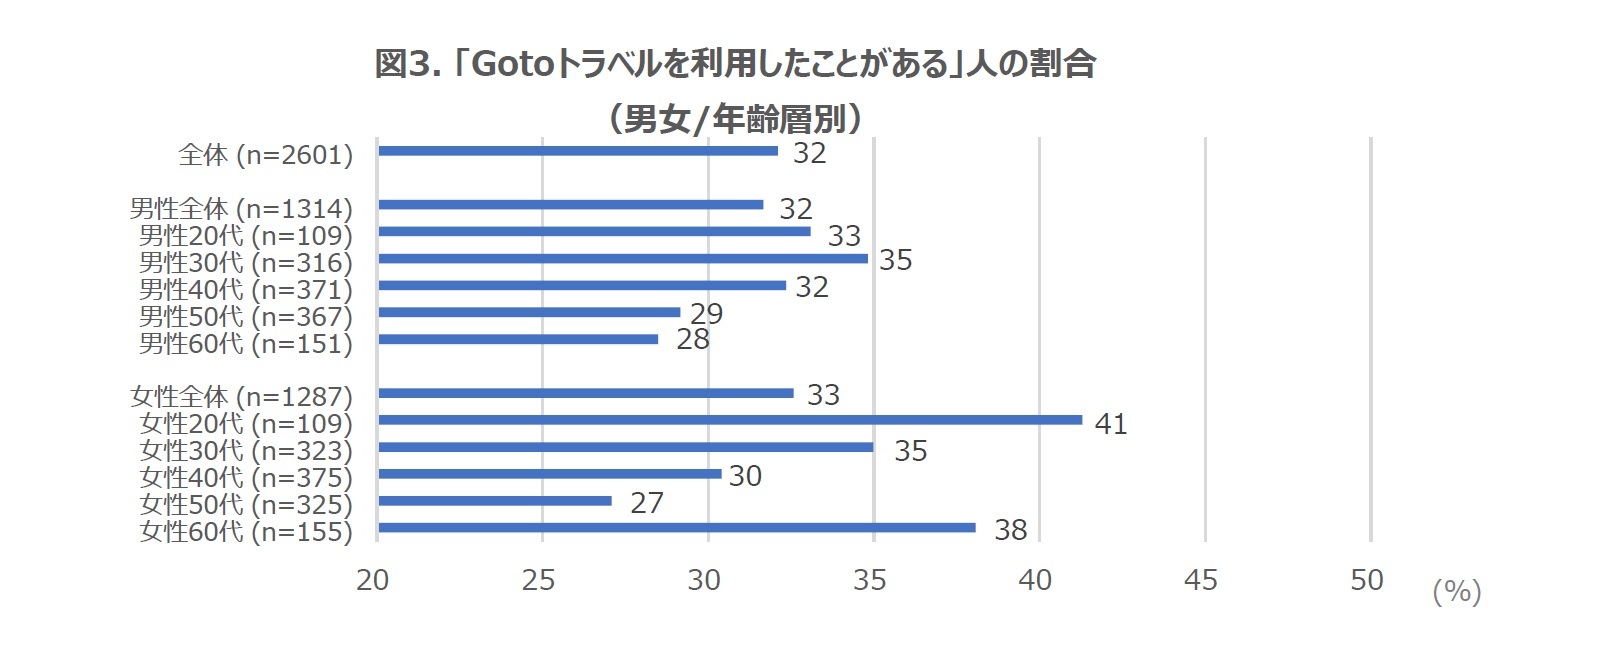 図3. 「Gotoトラベルを利用したことがある」人の割合（男女/年齢層別）